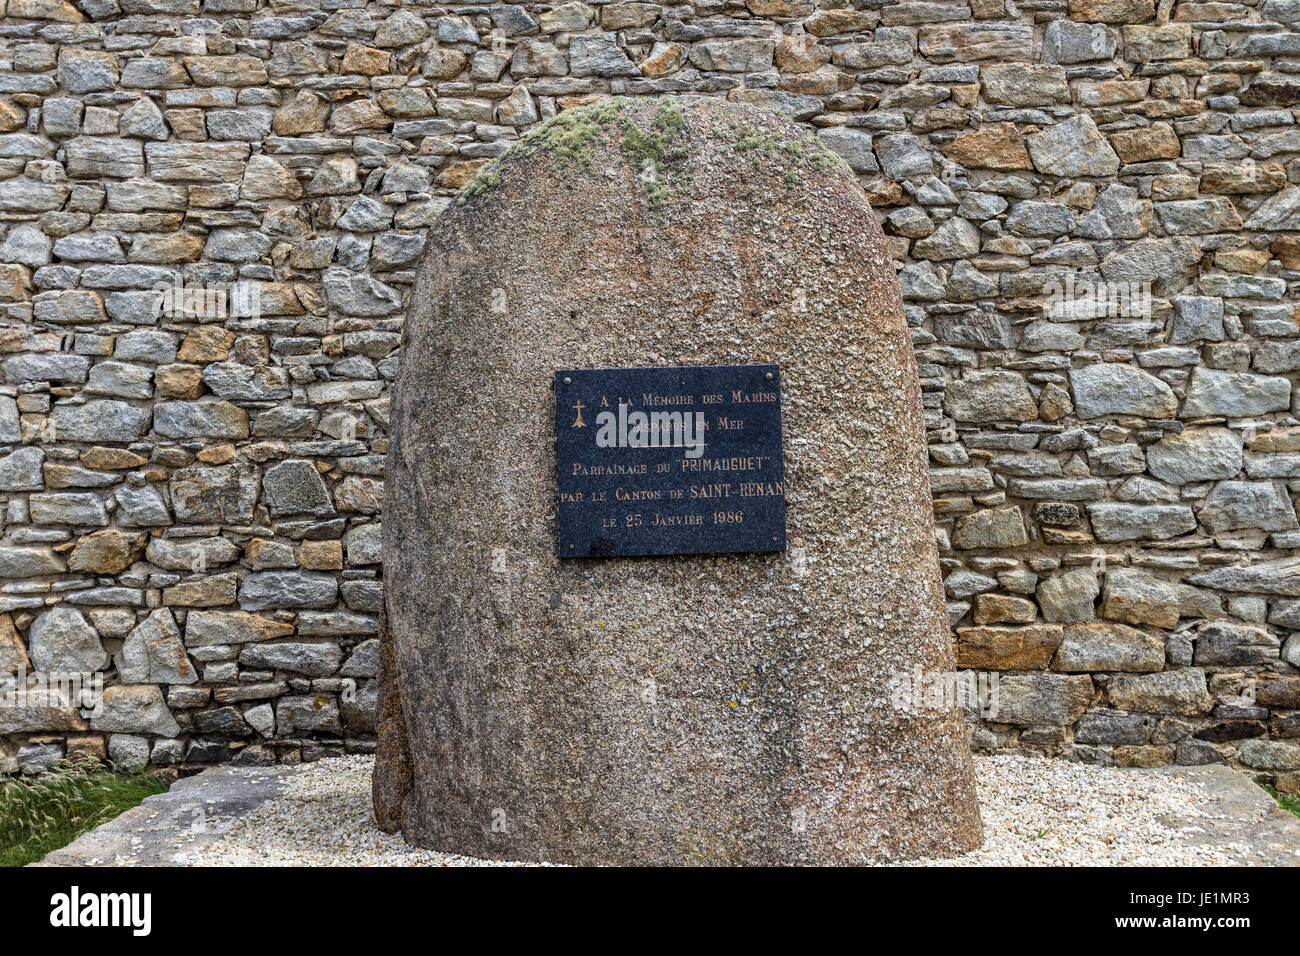 Monument aux marins perdus en mer sur la pointe de Corsen, Plouarzel, Bittany, France Banque D'Images